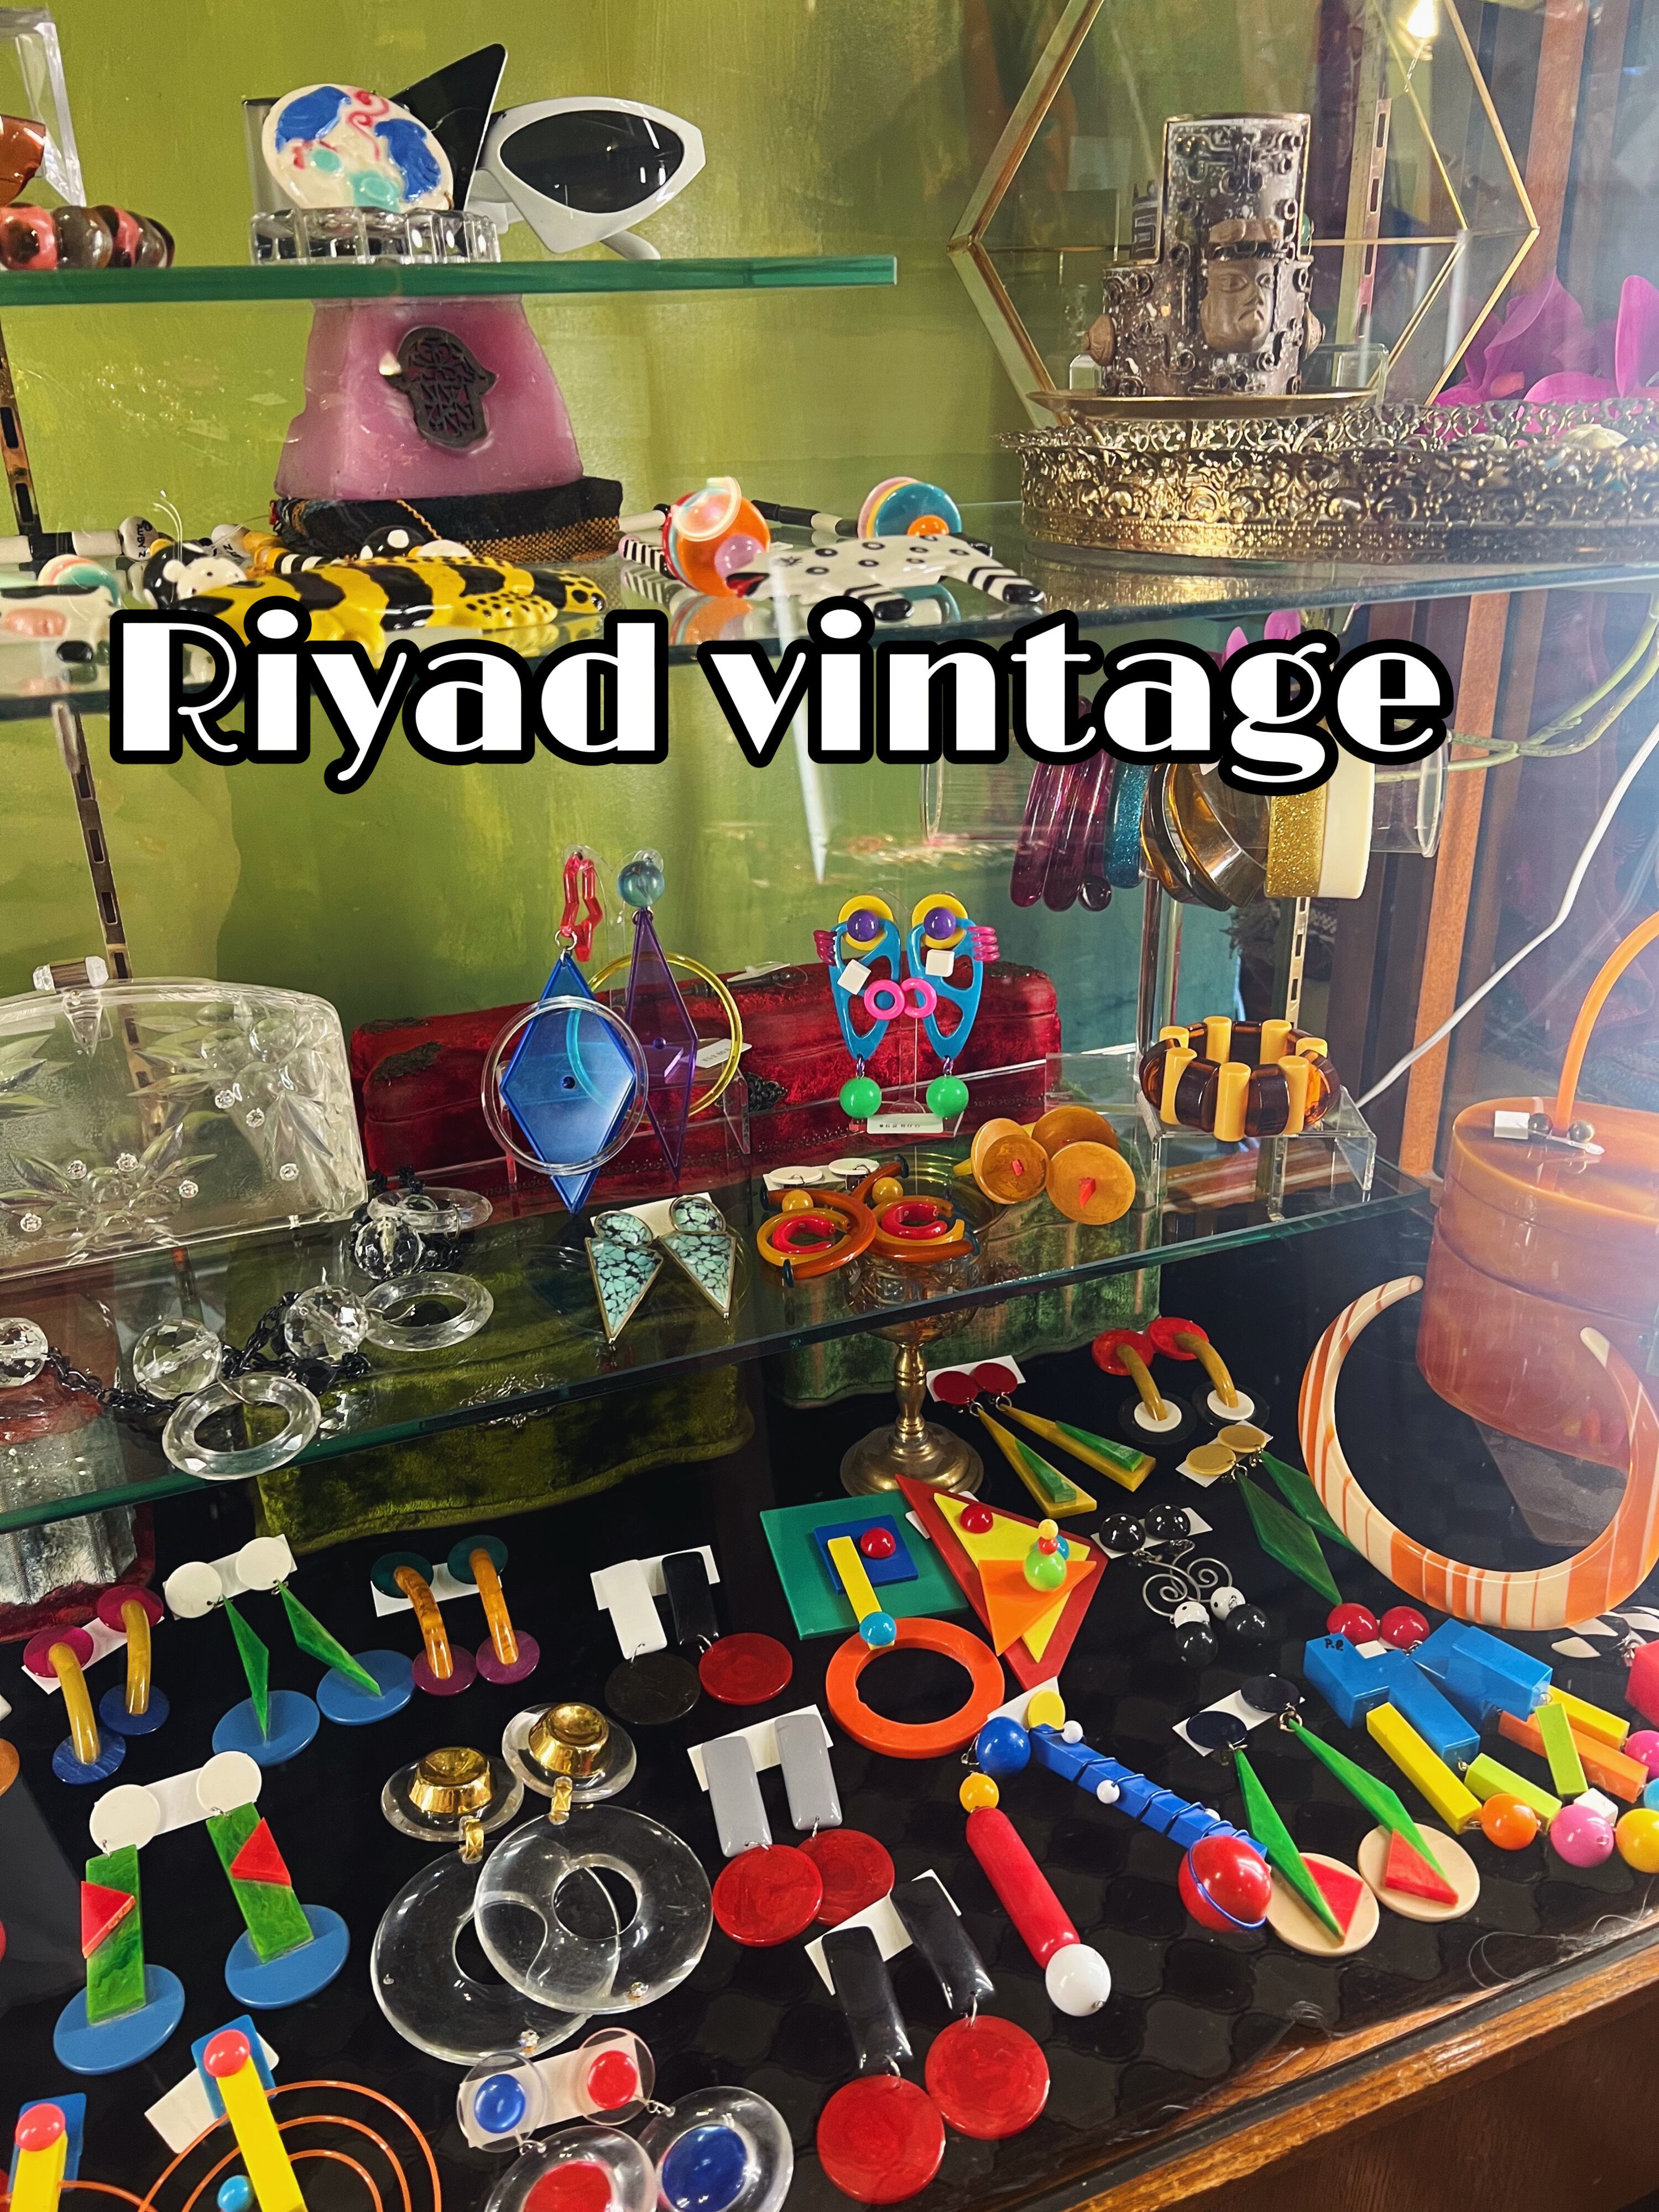 Riyad vintage shop